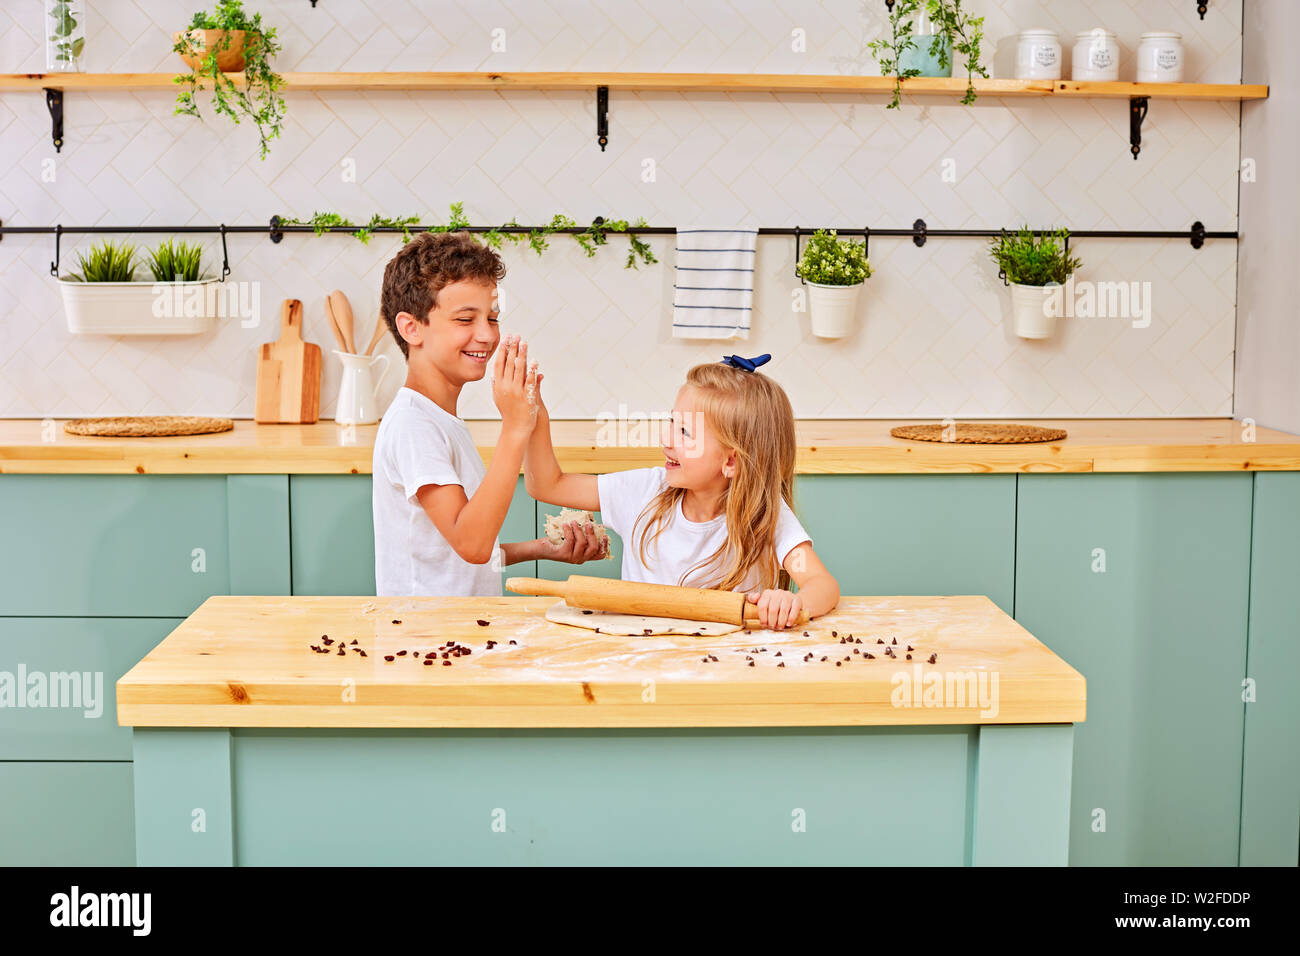 Glücklich liebende Familie bereitet Bäckerei zusammen. Bruder und Schwester sind Kochen, Cookies und Spaß in der Küche. Hausgemachte Speisen und wenig Hilfe Stockfoto